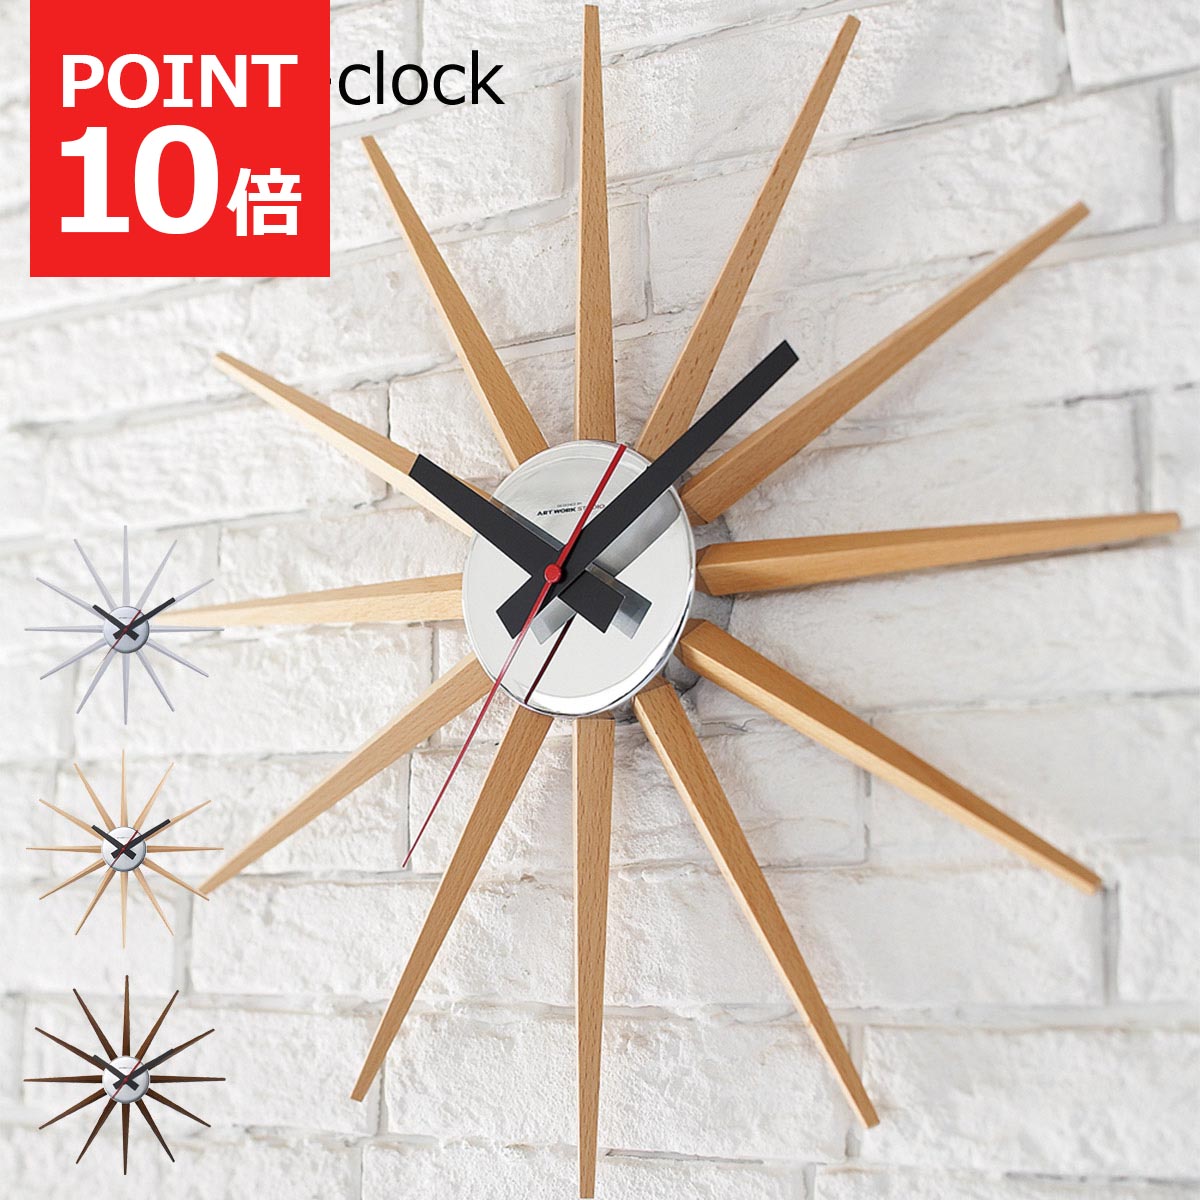 【先着半額クーポン】掛け時計 アトラス 2クロック おしゃれ 北欧 壁掛け時計 スイーブムーブメント 木製 インダストリアル モダン アメリカン ミッドセンチュリー ウォールクロック デザイン …